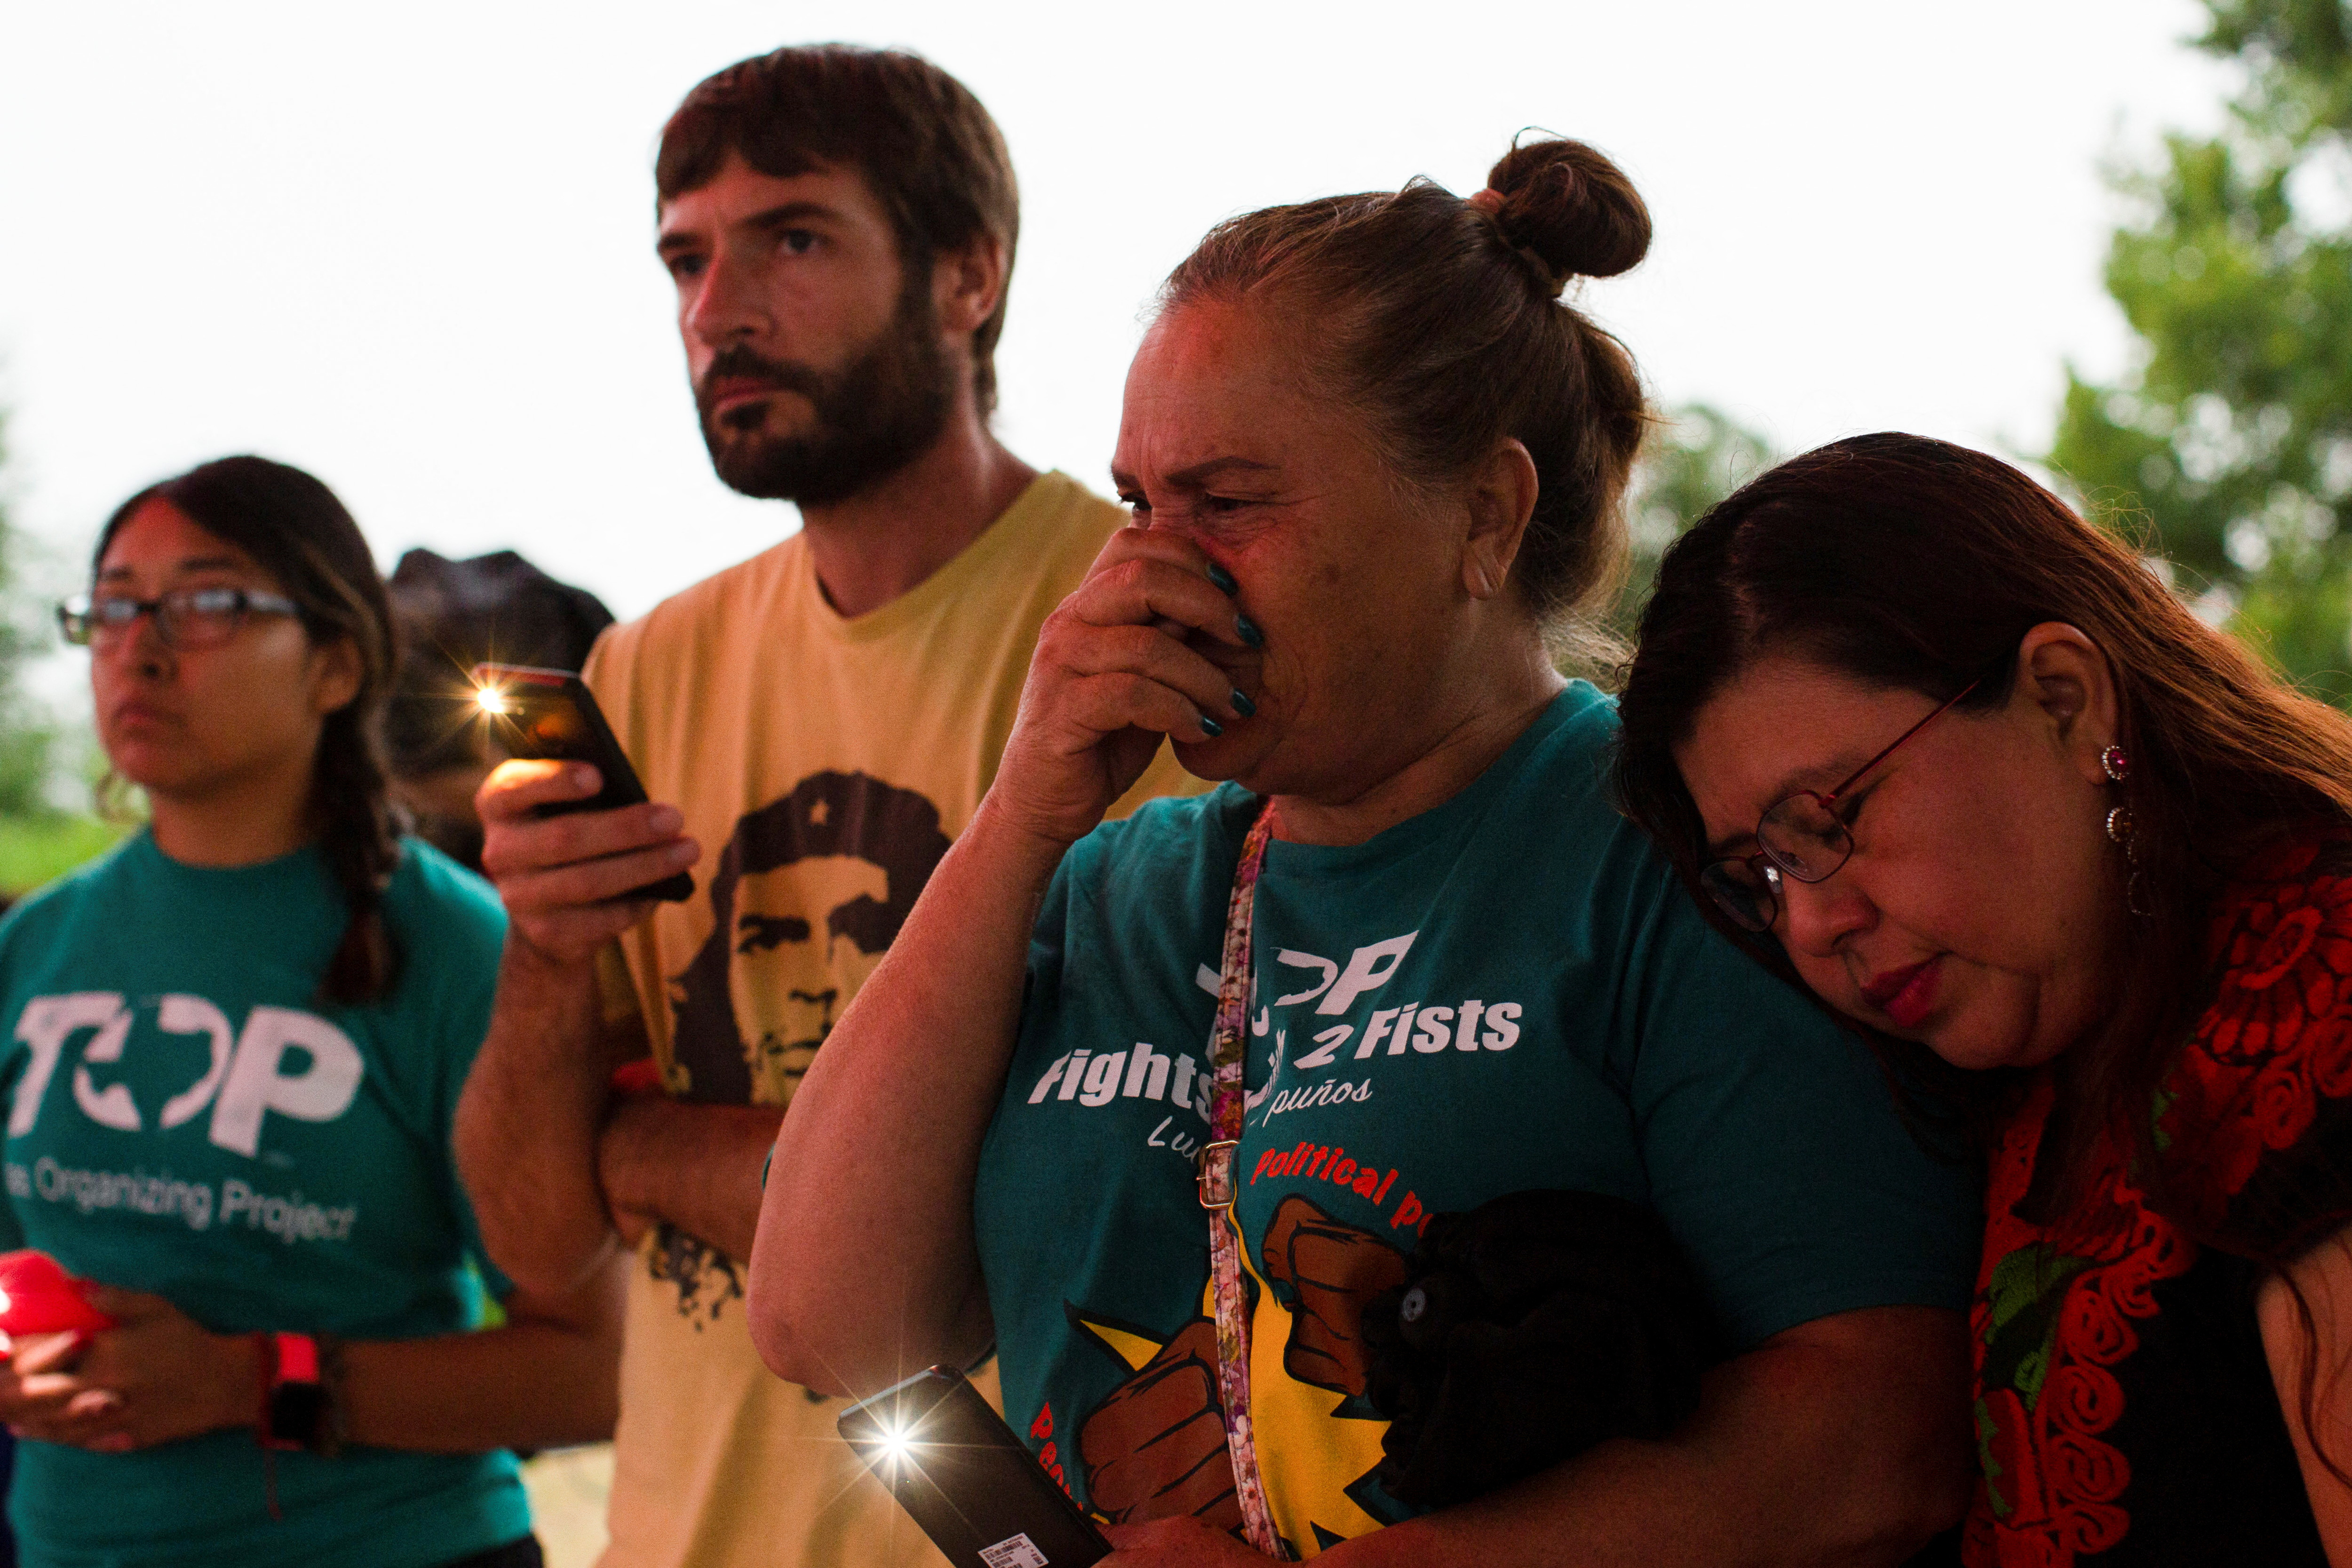 Andrea Osorio lamentando la tragedia de los migrantes (Foto: REUTERS/Kaylee Greenlee Beal)